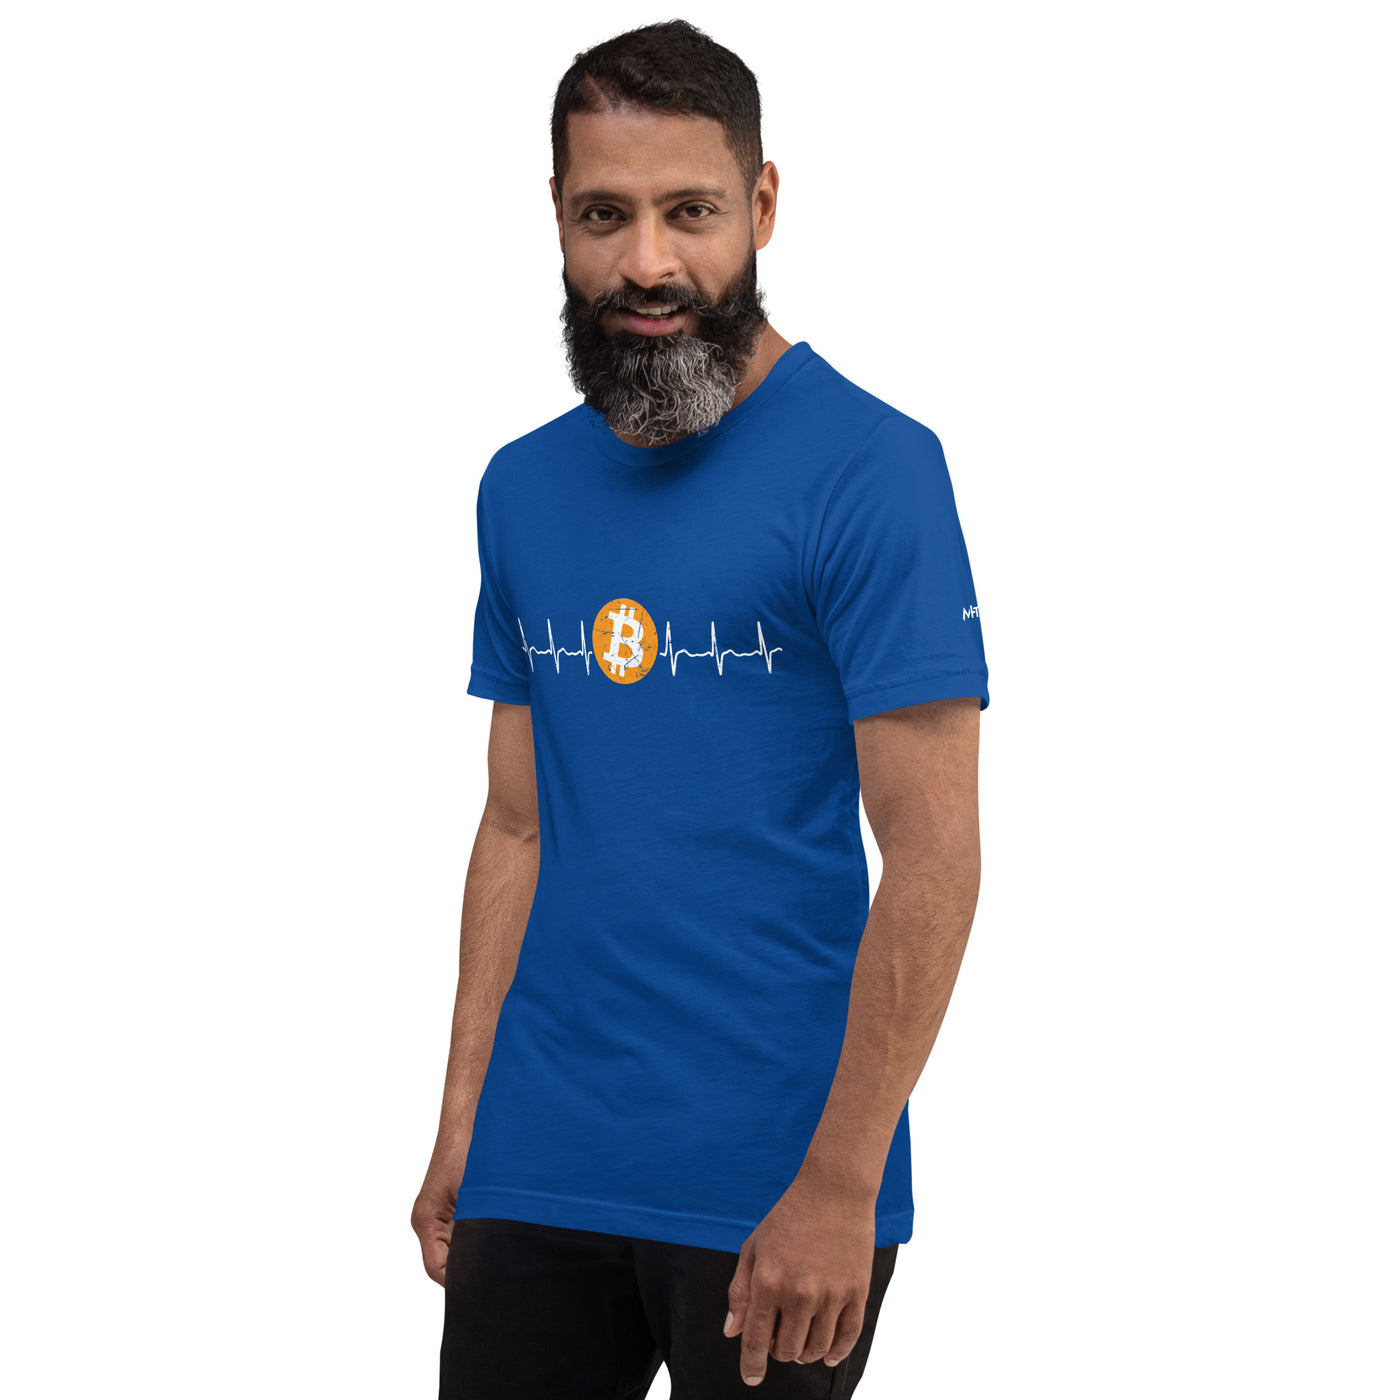 Bitcoin Heartbeat - Unisex t-shirt